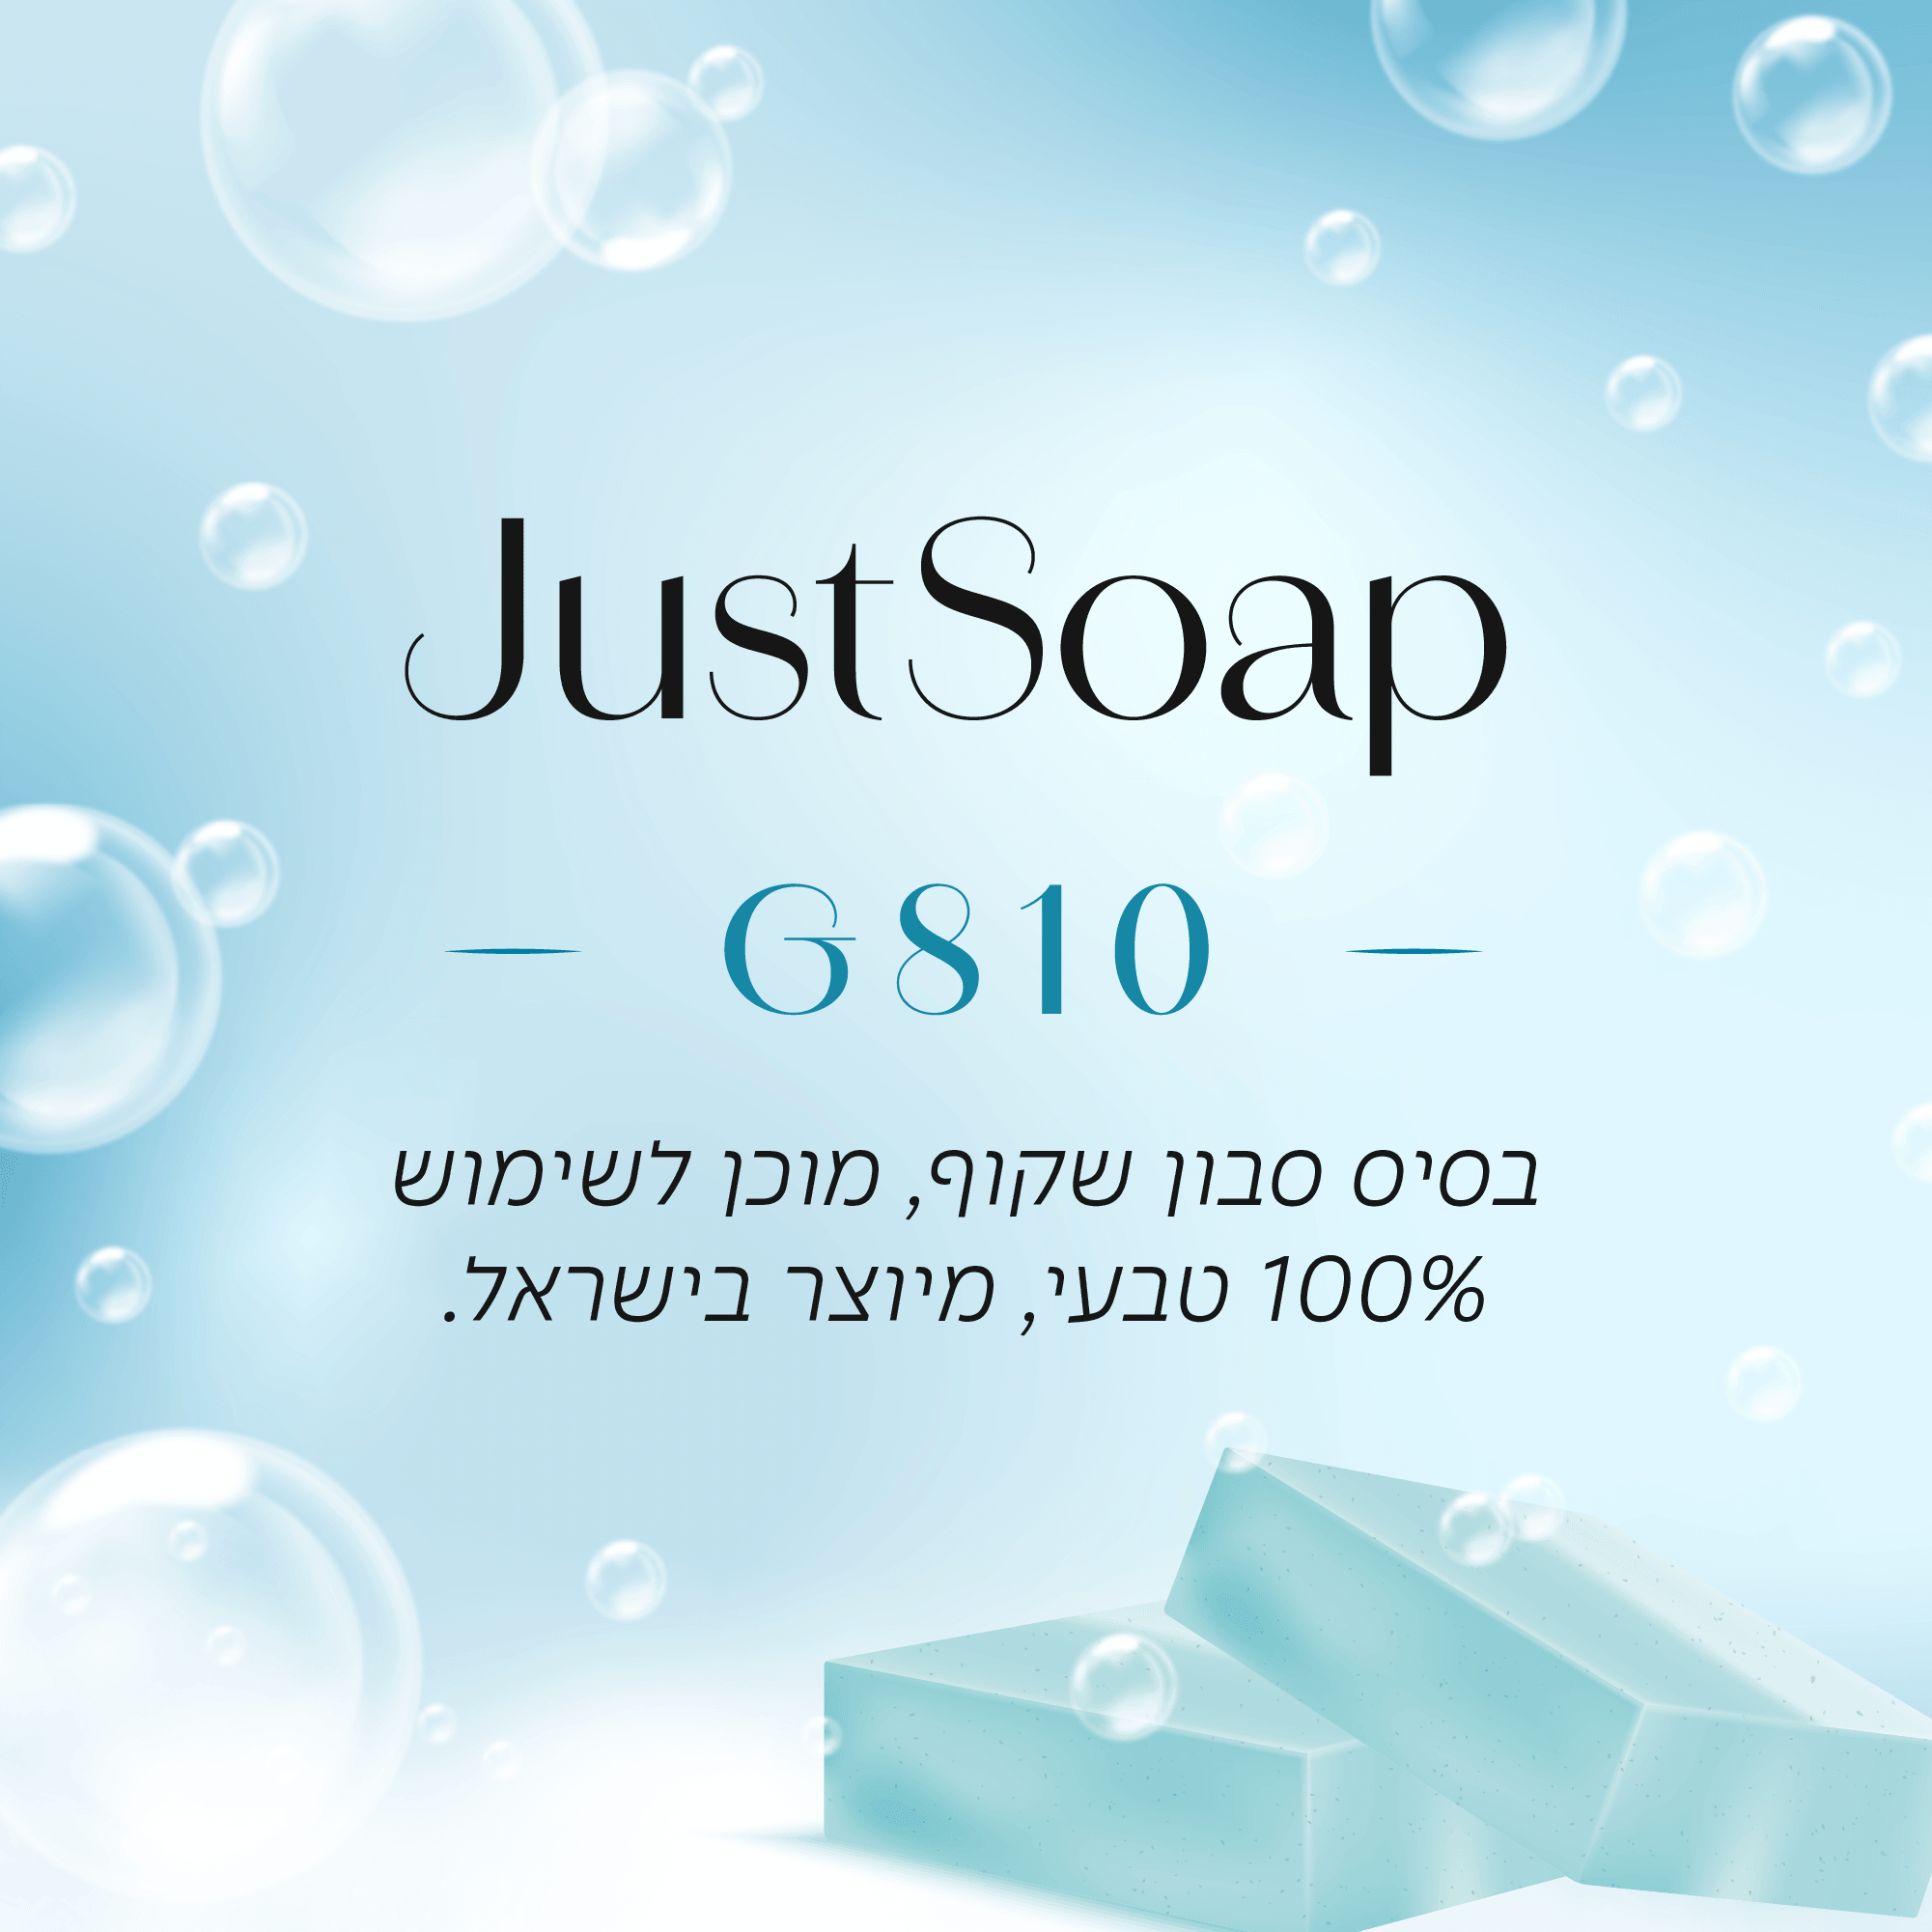 בסיס סבון שקוף G810 מוכן לשימוש בשיטת Melt & Pour - שיאננדה